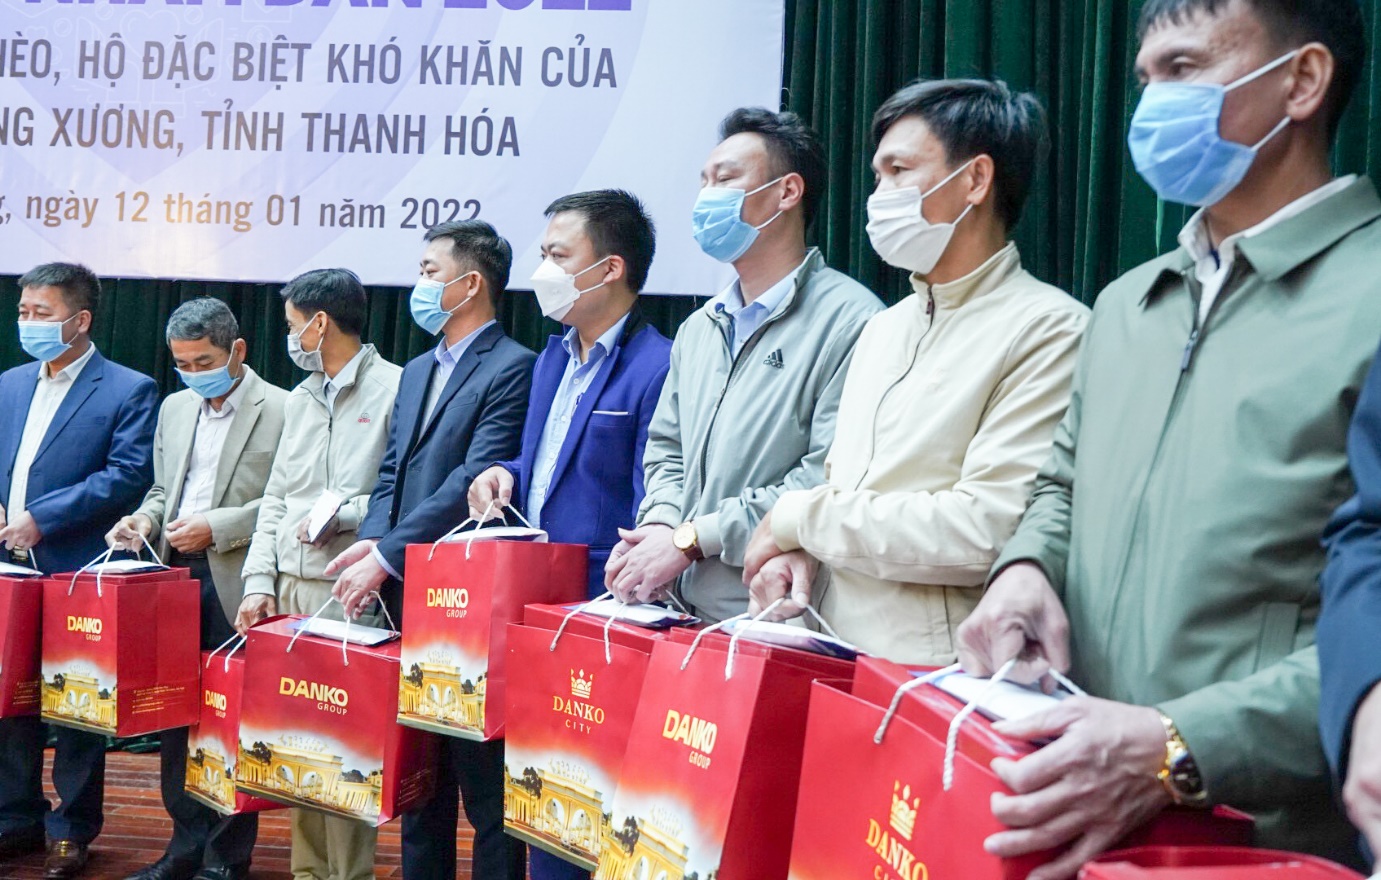 Danko Group trao tặng hơn 4 tỷ đồng quà Tết cho các hộ nghèo, đặc biệt khó khăn trên địa bàn huyện Quảng Xương - Ảnh 3.